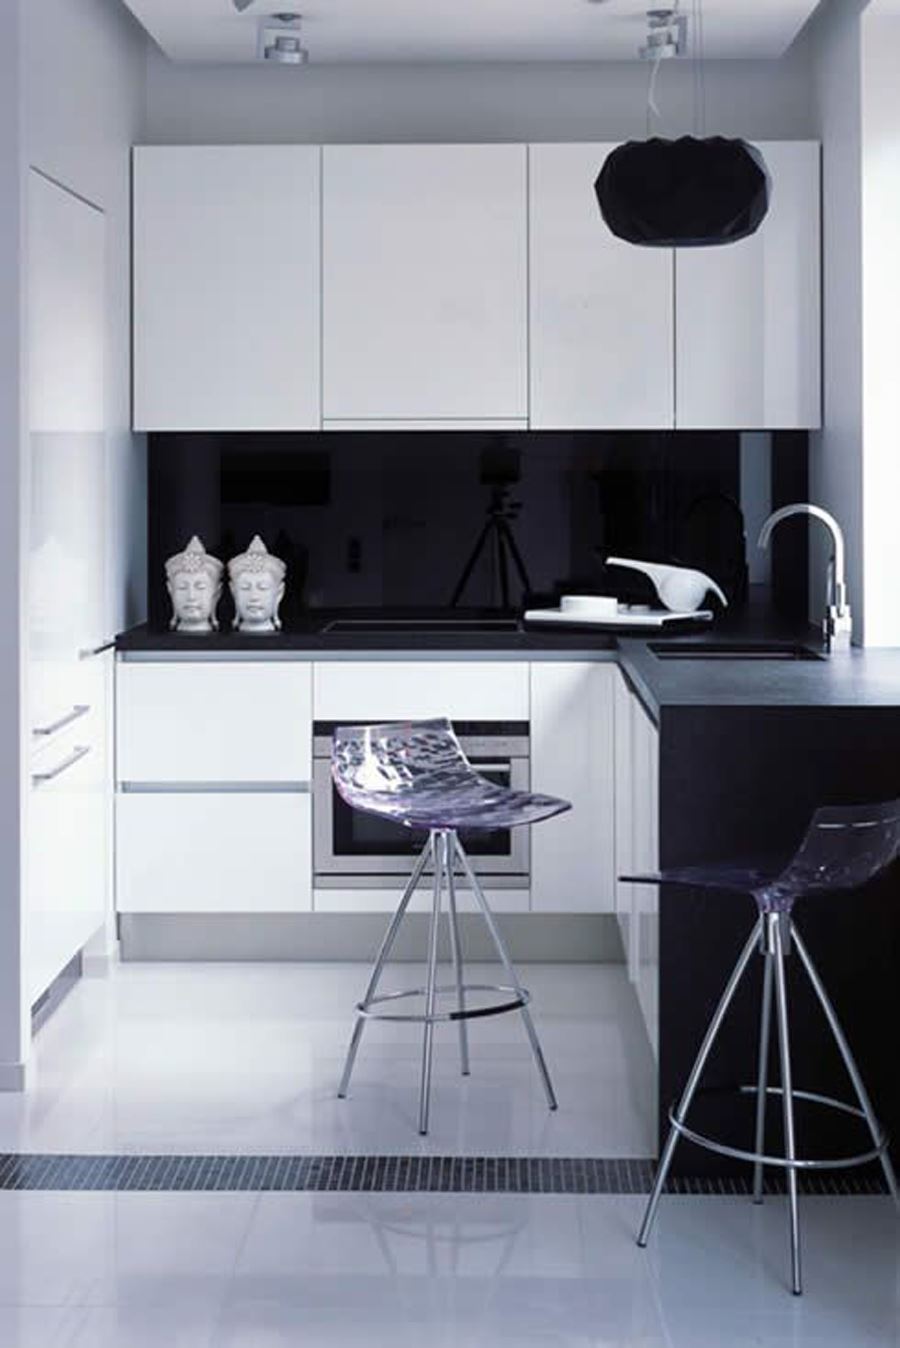 Siyah beyaz mutfak dolabı modelleri